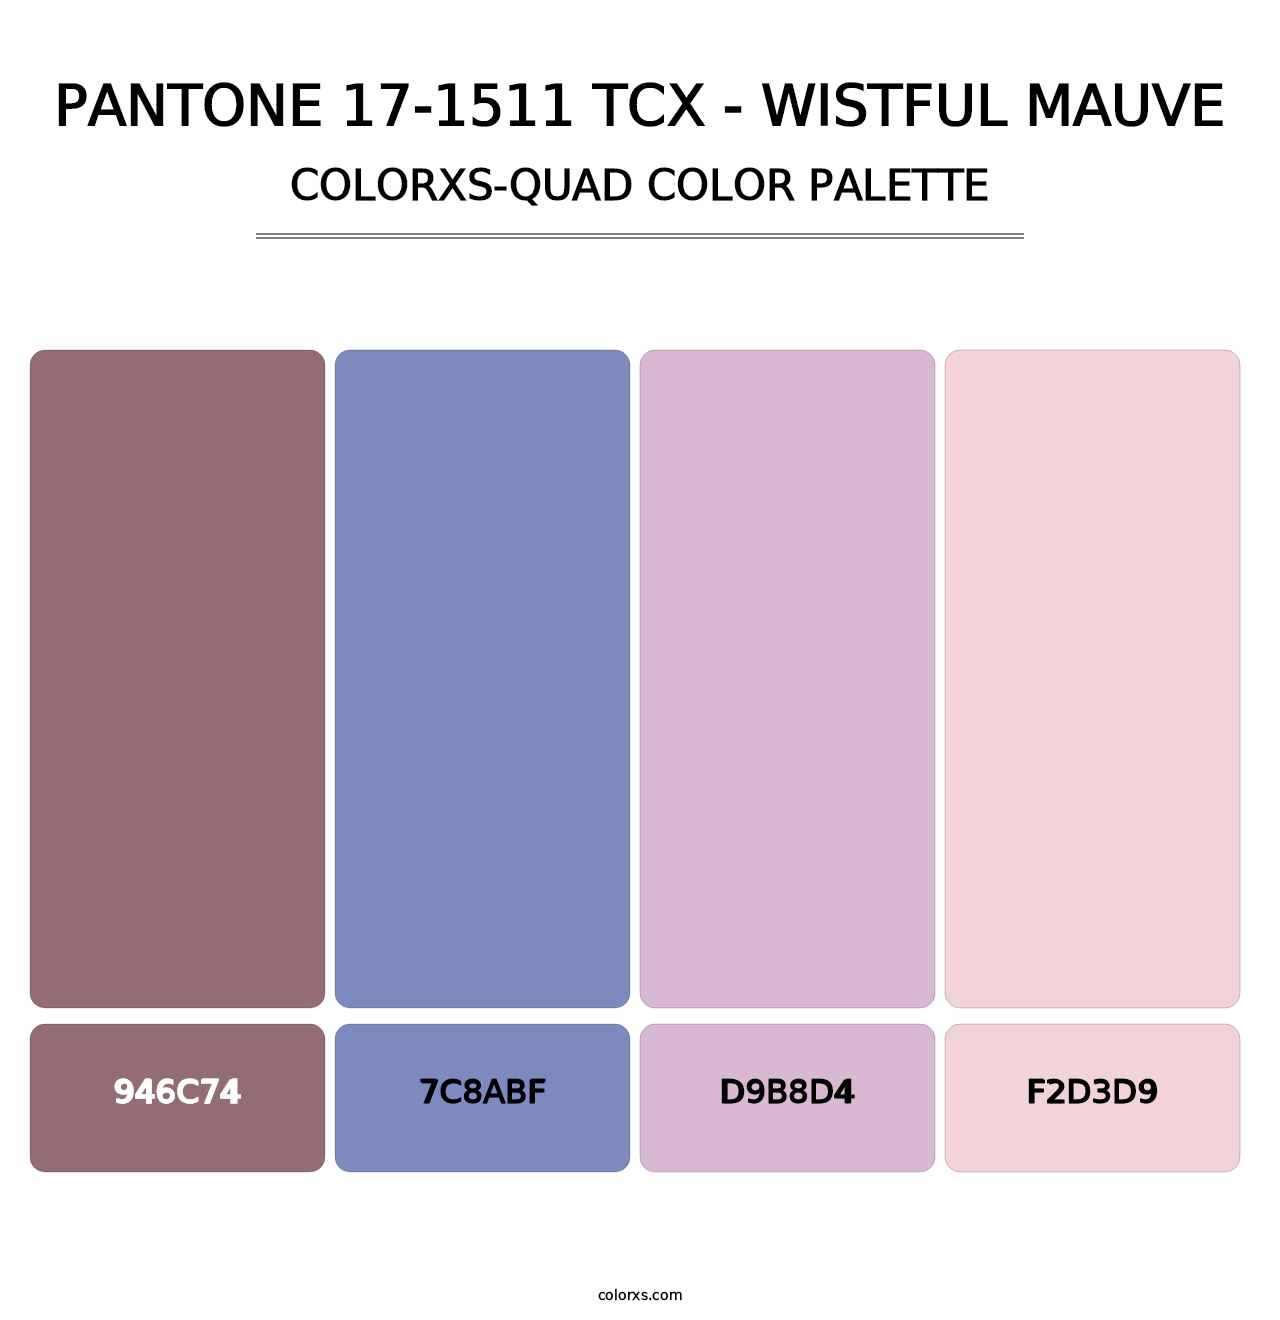 PANTONE 17-1511 TCX - Wistful Mauve - Colorxs Quad Palette